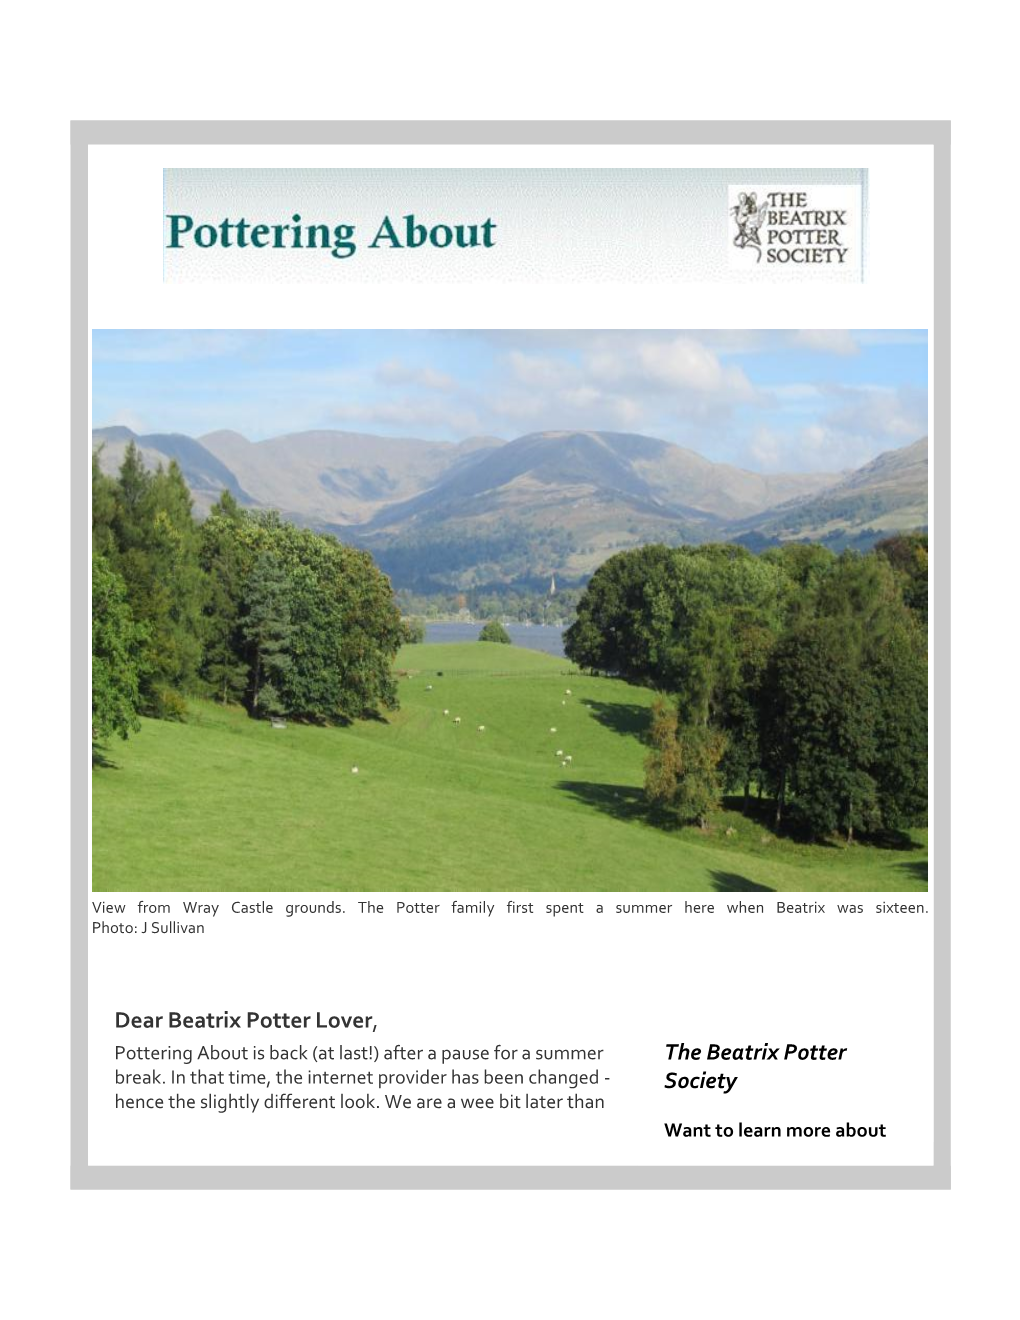 Pottering About September 2014: Beatrix Potter Society E-News